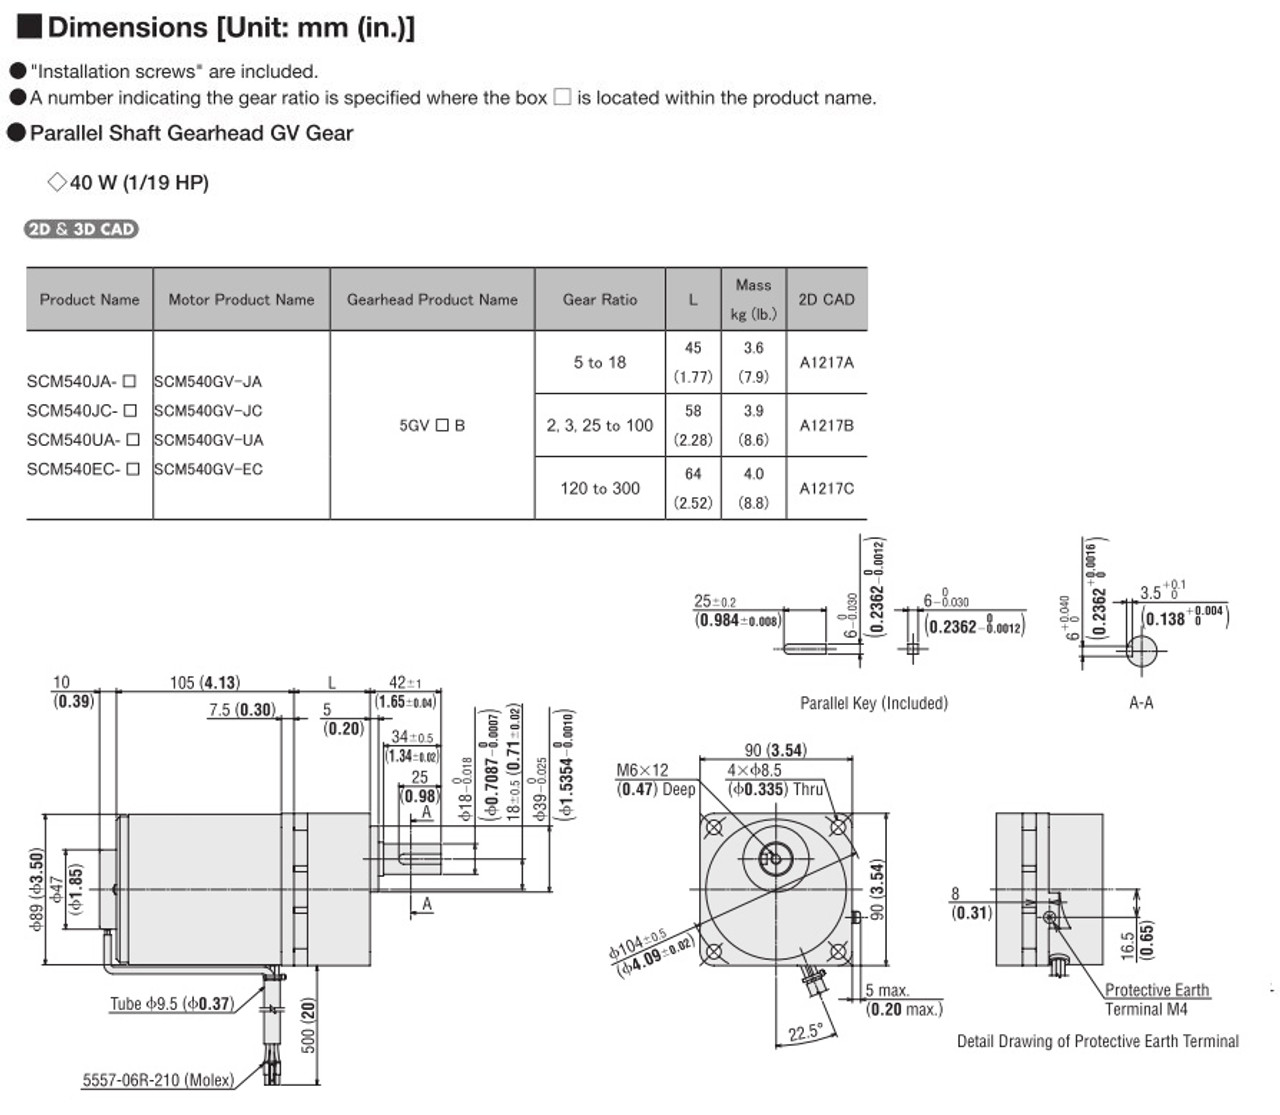 SCM540EC-120 - Dimensions